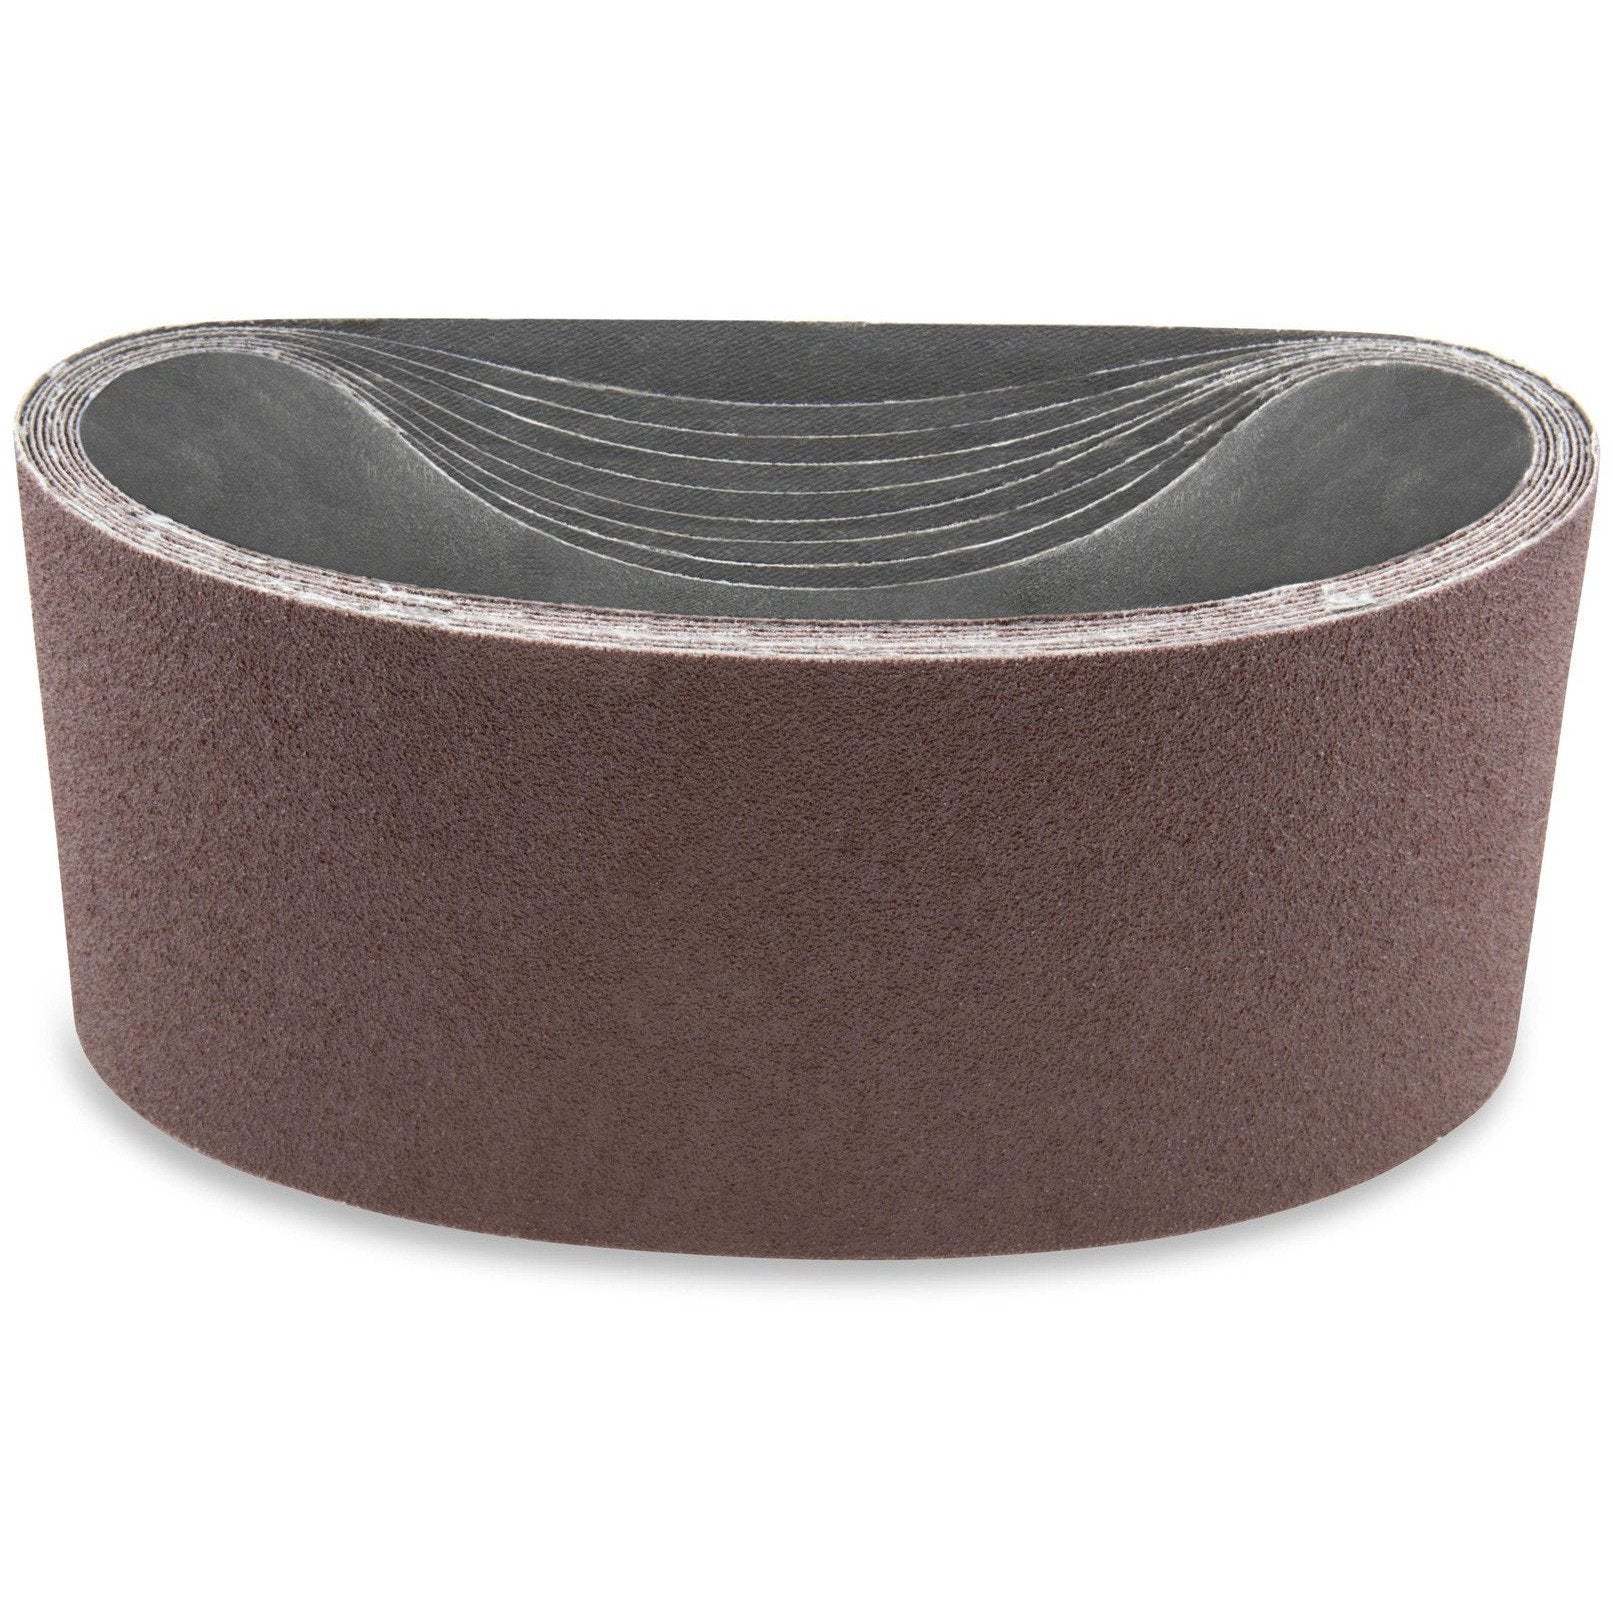 4 X 24 Inch Aluminum Oxide Metal Sanding Belts, 6 Pack - Red Label Abrasives